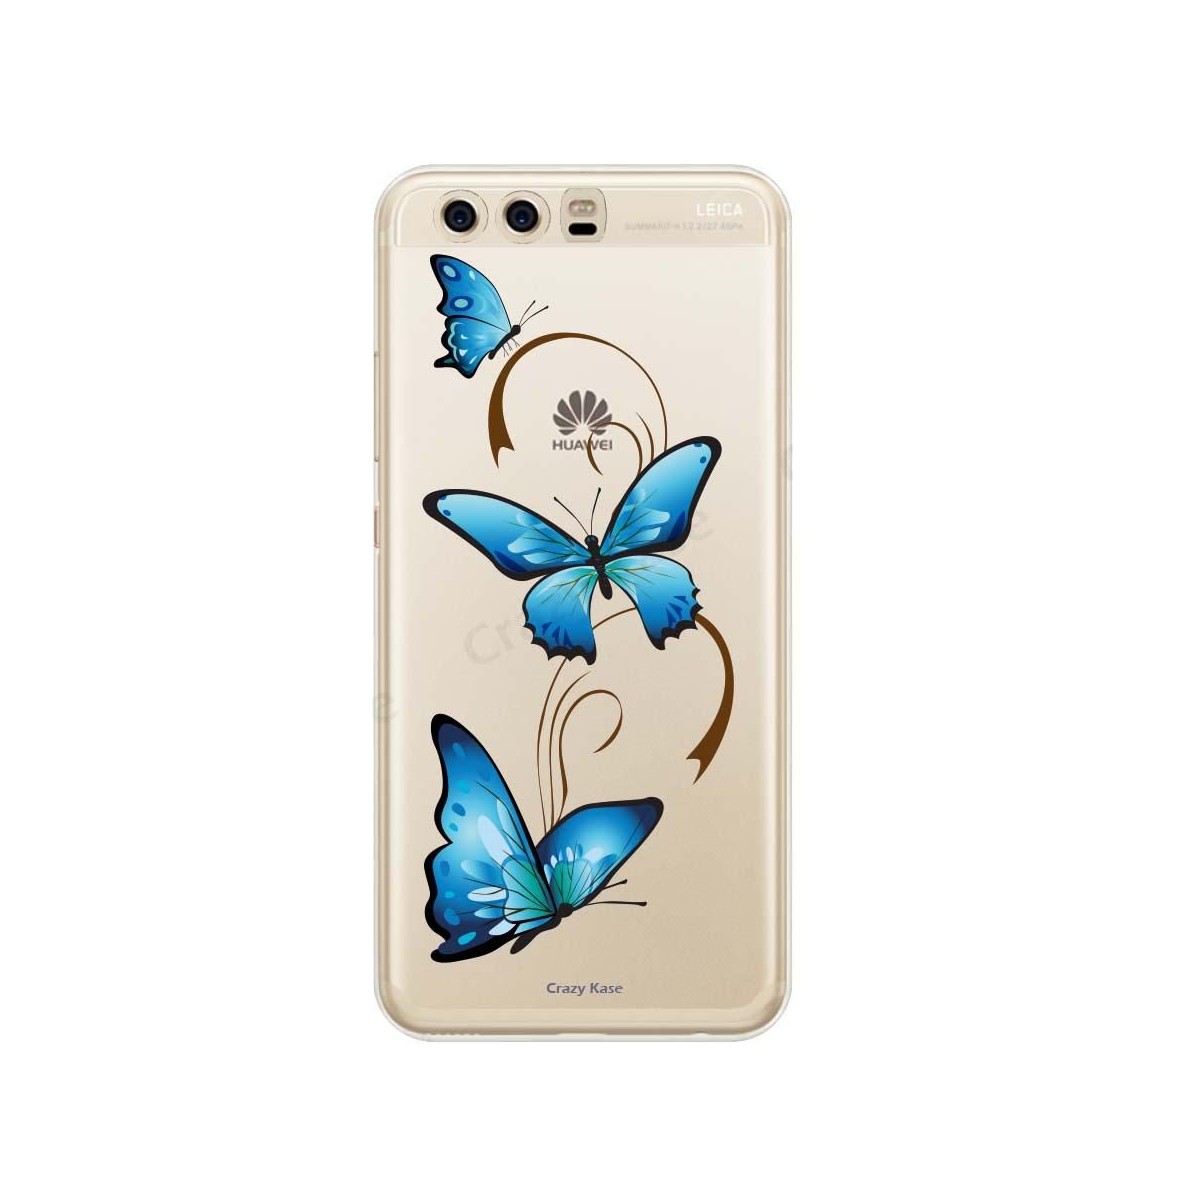 Coque Huawei P10 Plus souple motif Papillon sur Arabesque - Crazy Kase